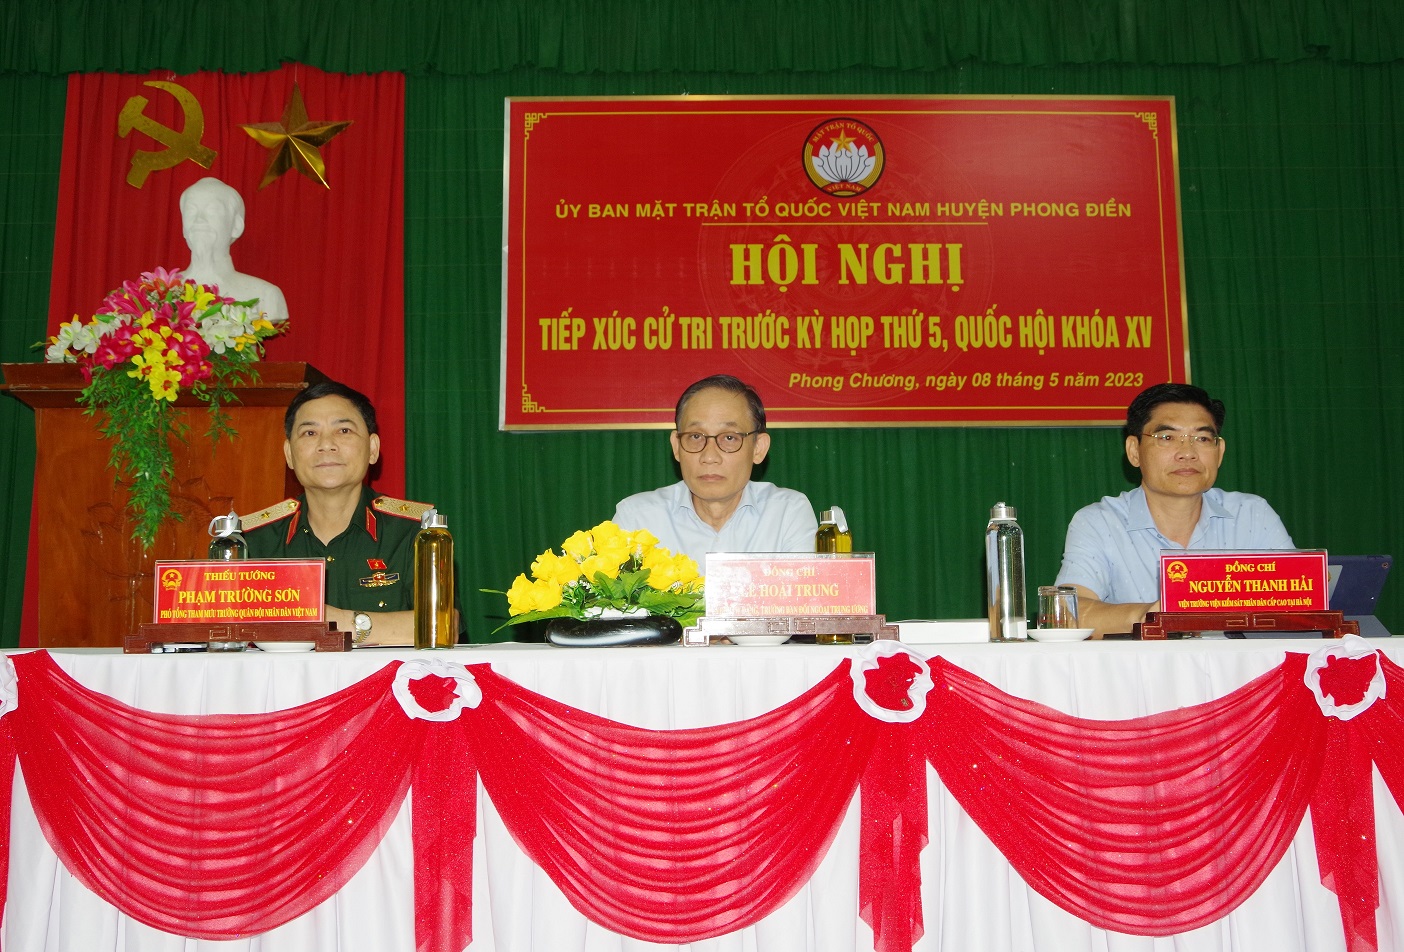 Thiếu tướng Phạm Trường Sơn tiếp xúc cử tri tại tỉnh Thừa Thiên Huế